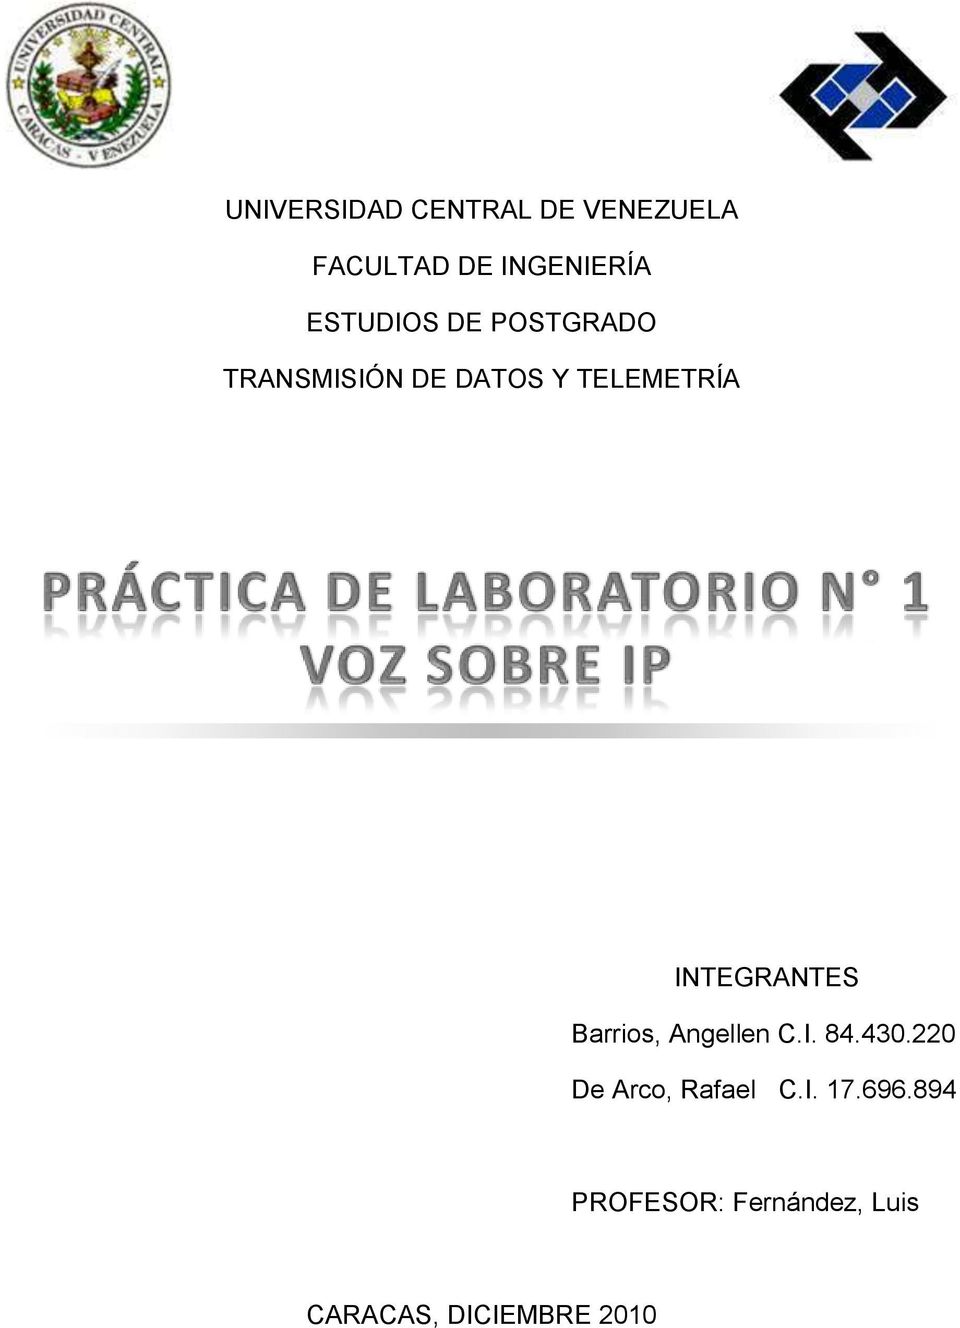 INTEGRANTES Barrios, Angellen C.I. 84.430.